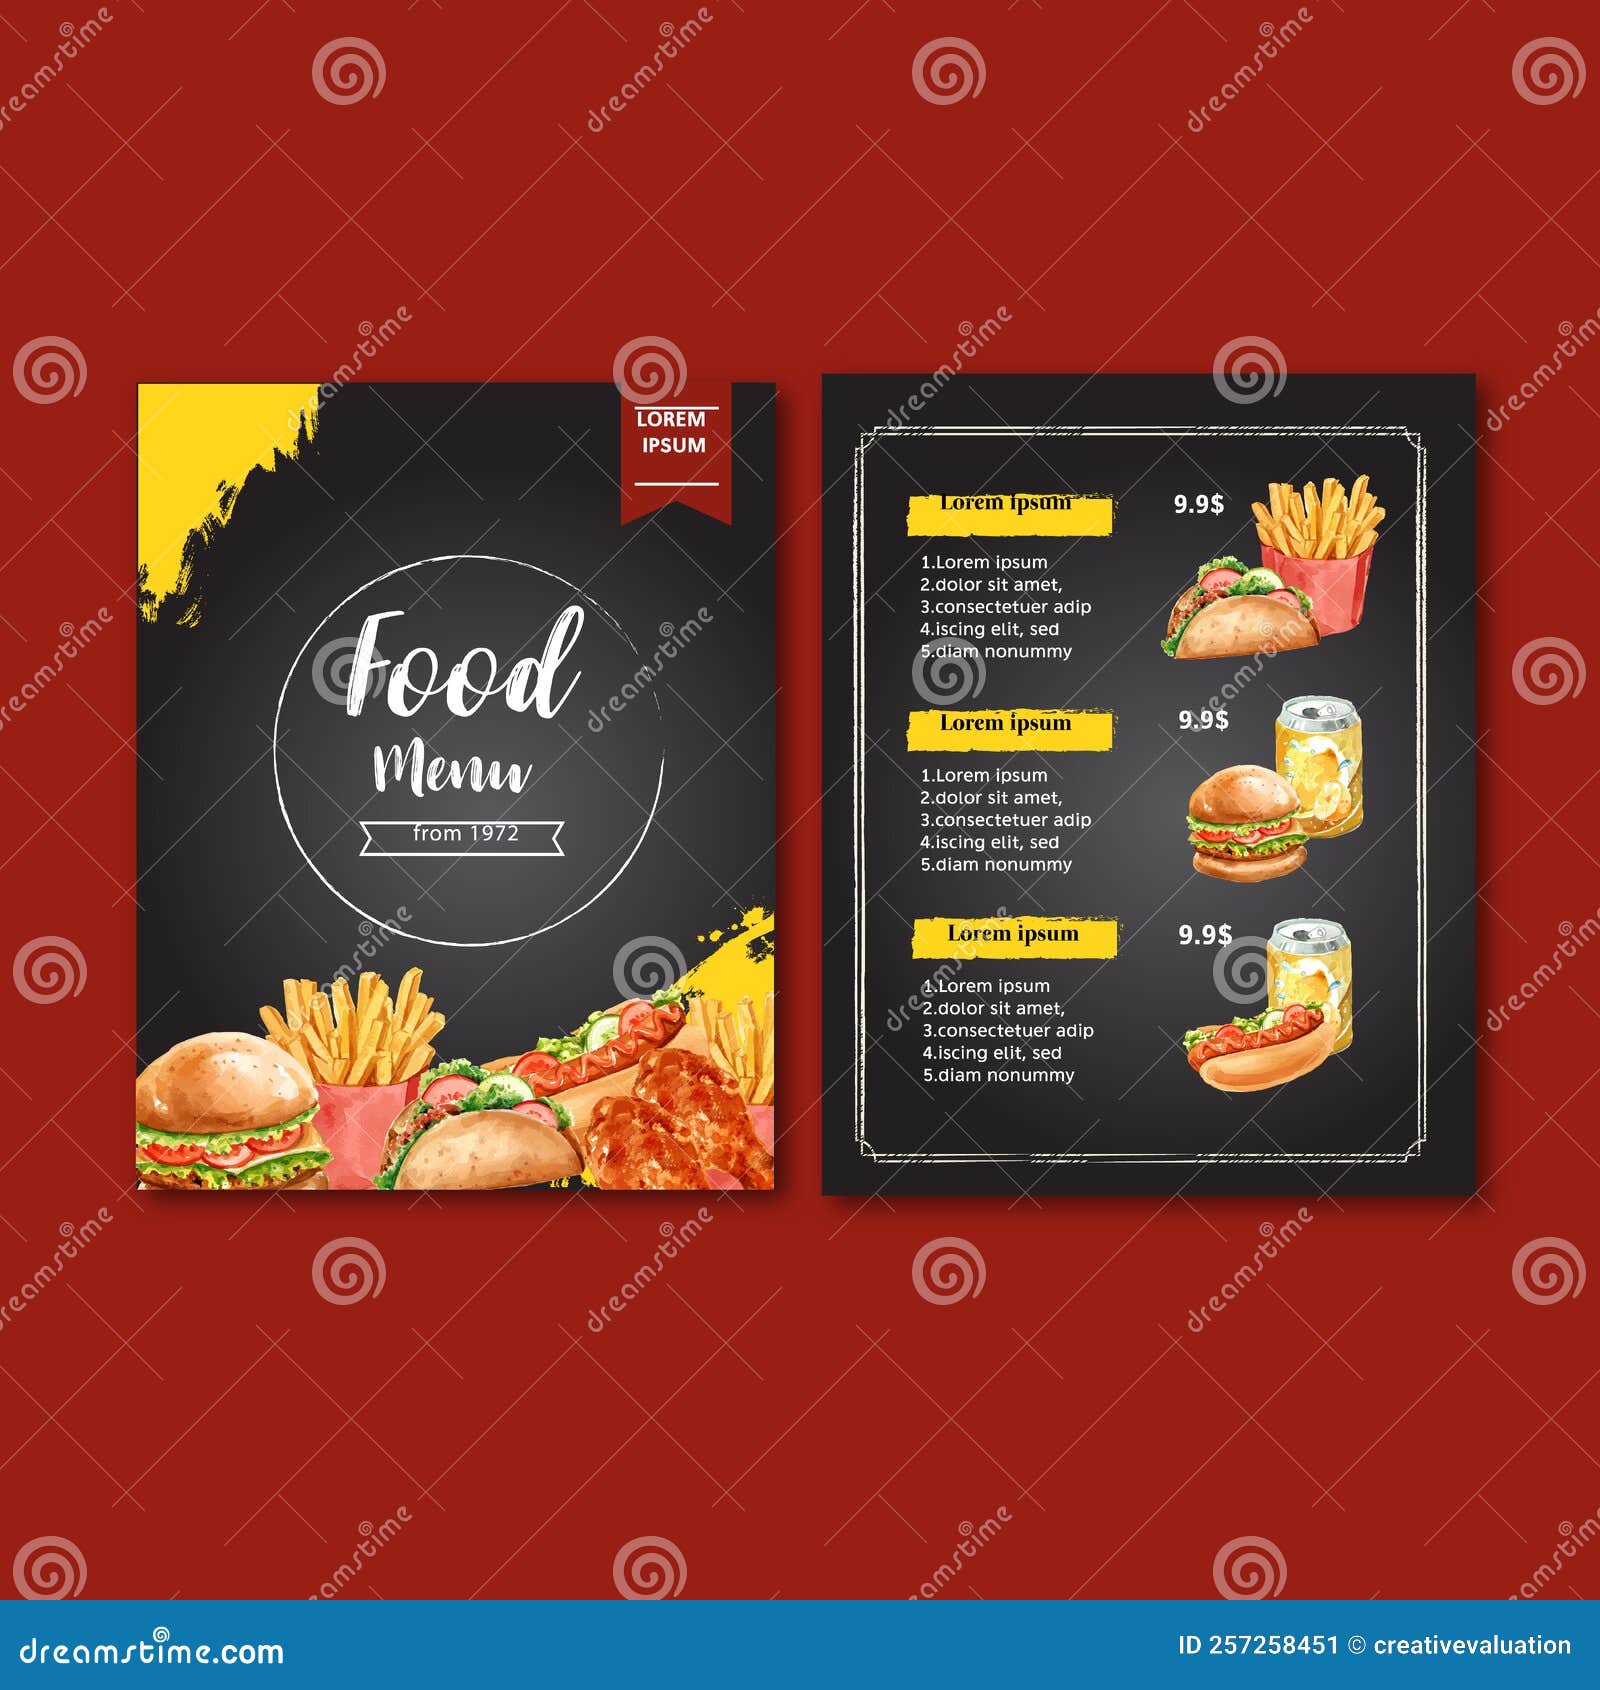 Thiết kế menu là công việc quan trọng đối với một nhà hàng chuyên nghiệp. Hình ảnh liên quan đến menu thiết kế là một điều đáng để ngắm nhìn, với các hình ảnh chuyên nghiệp và tinh tế, sẽ giúp thực khách tò mò muốn tìm hiểu thêm về nhà hàng của bạn. 